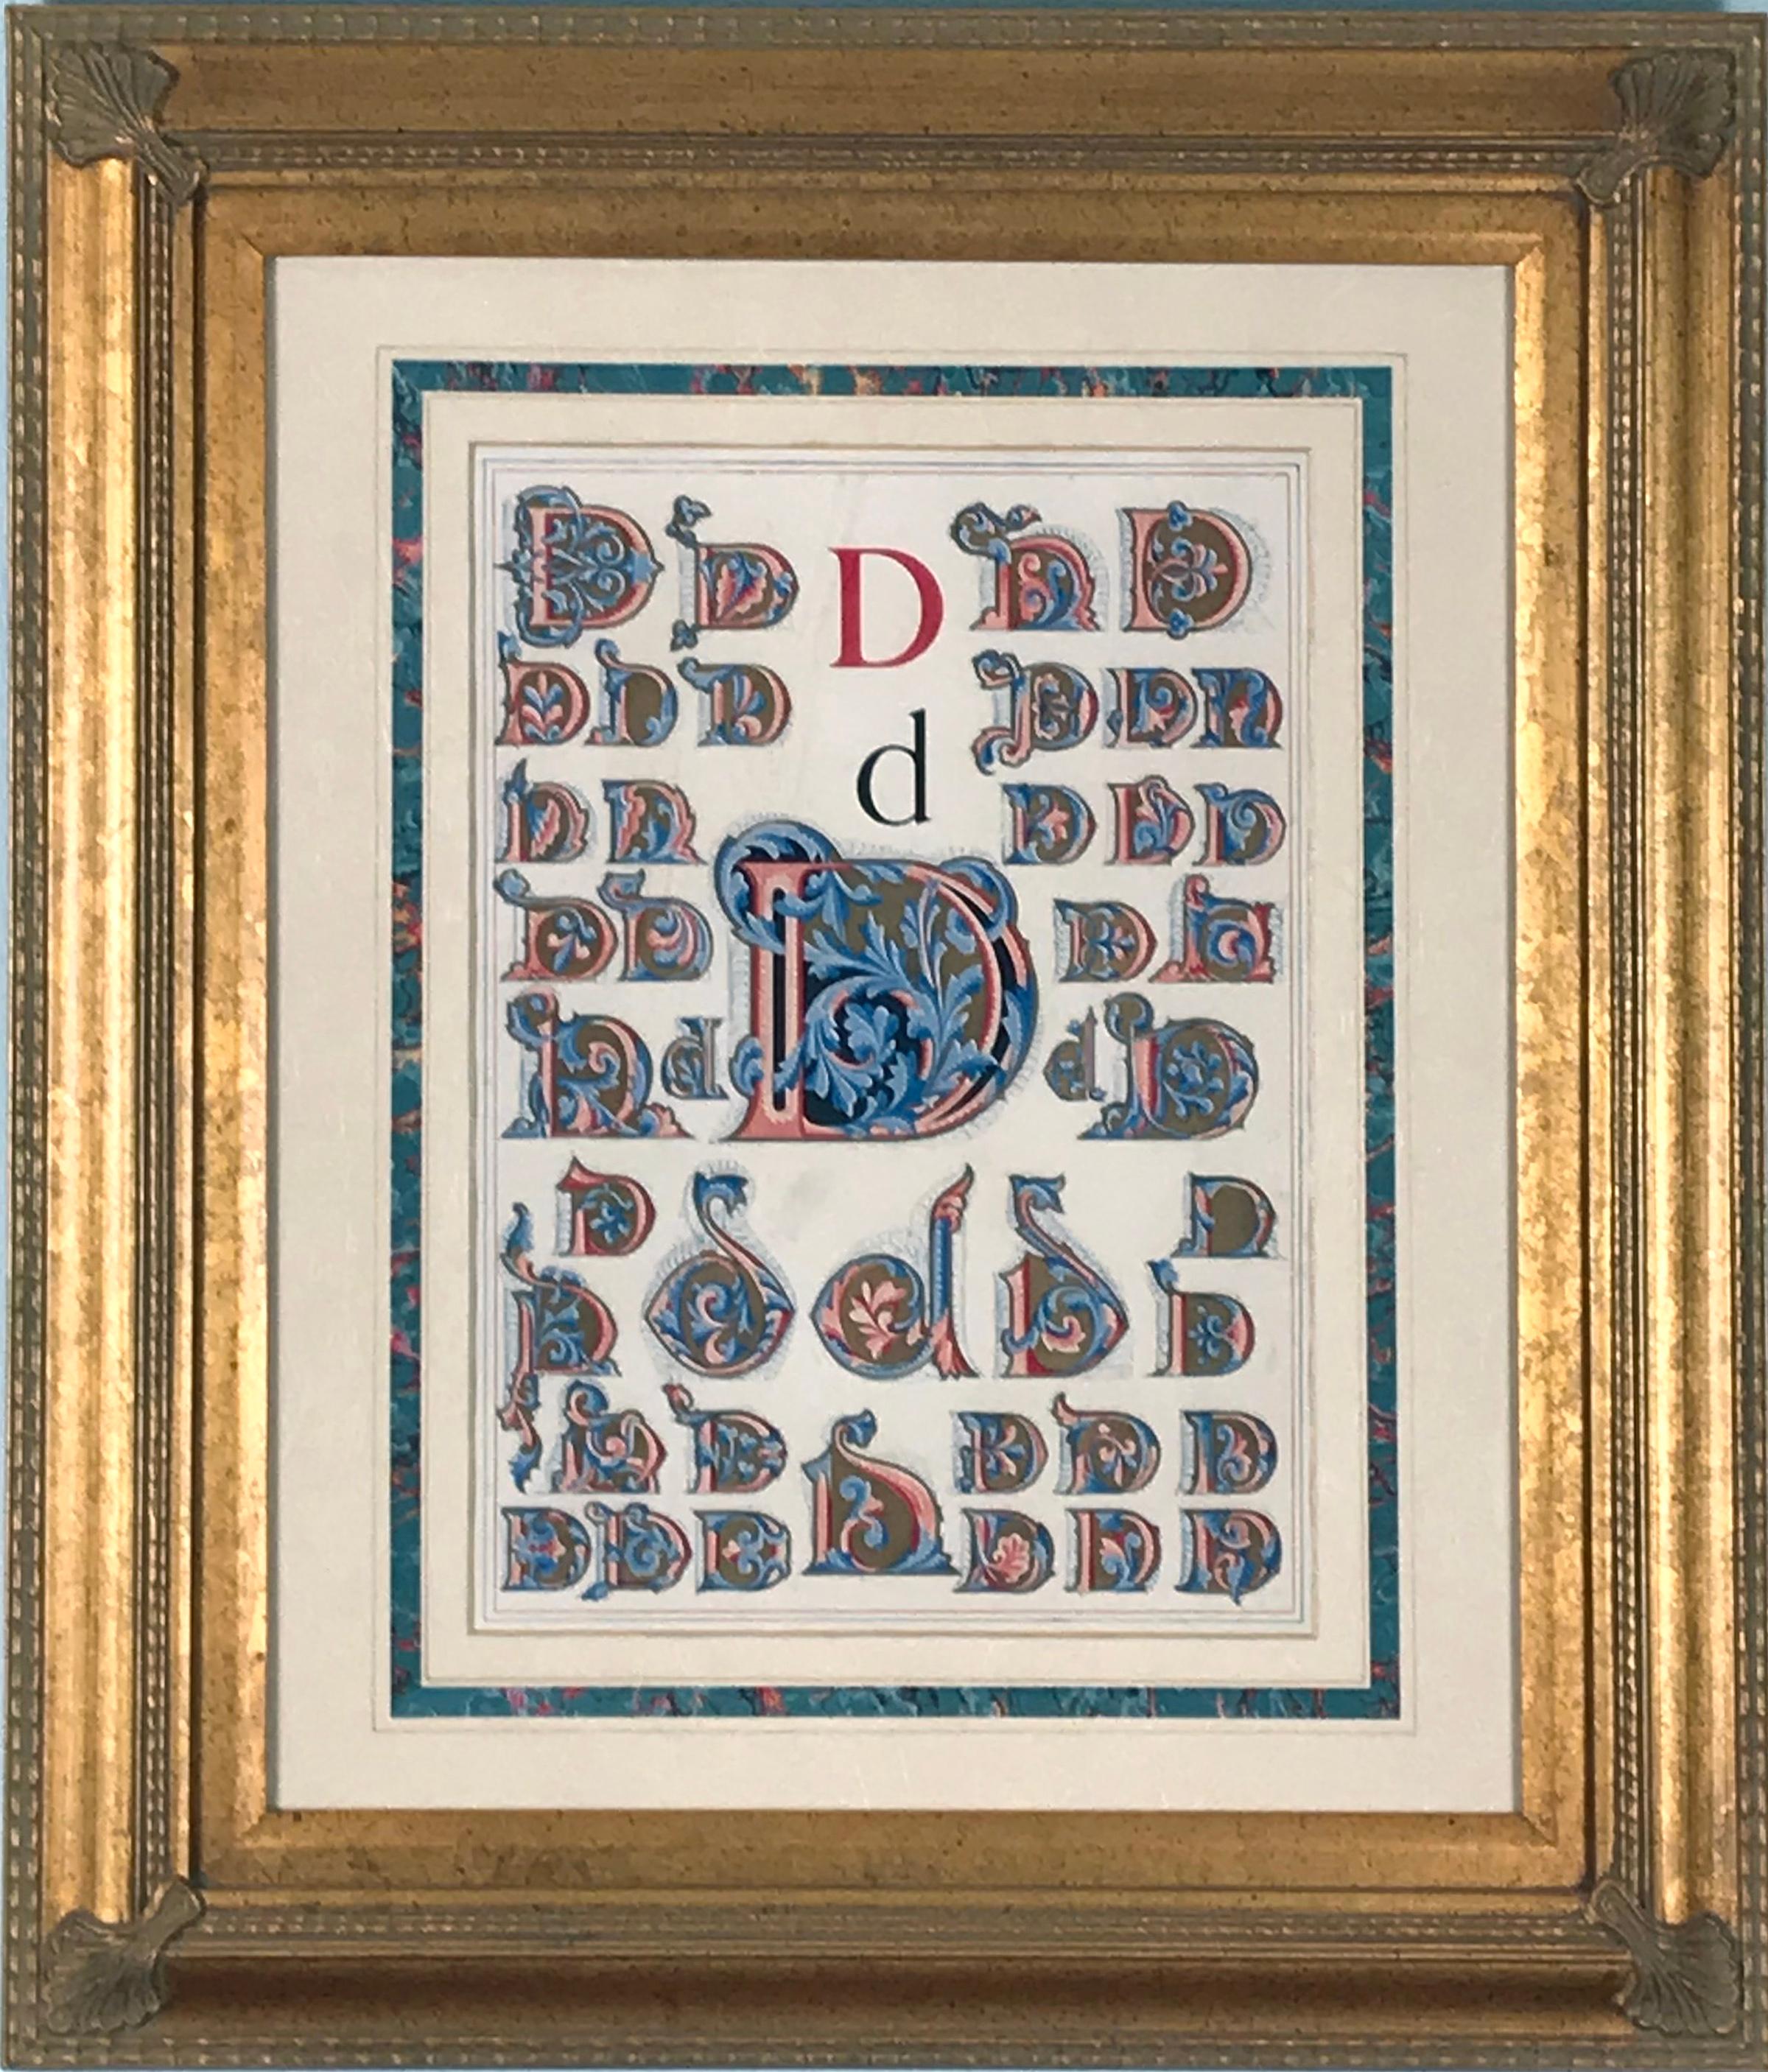 Initial Letters "D" (Alphabet) - Print by Owen Jones